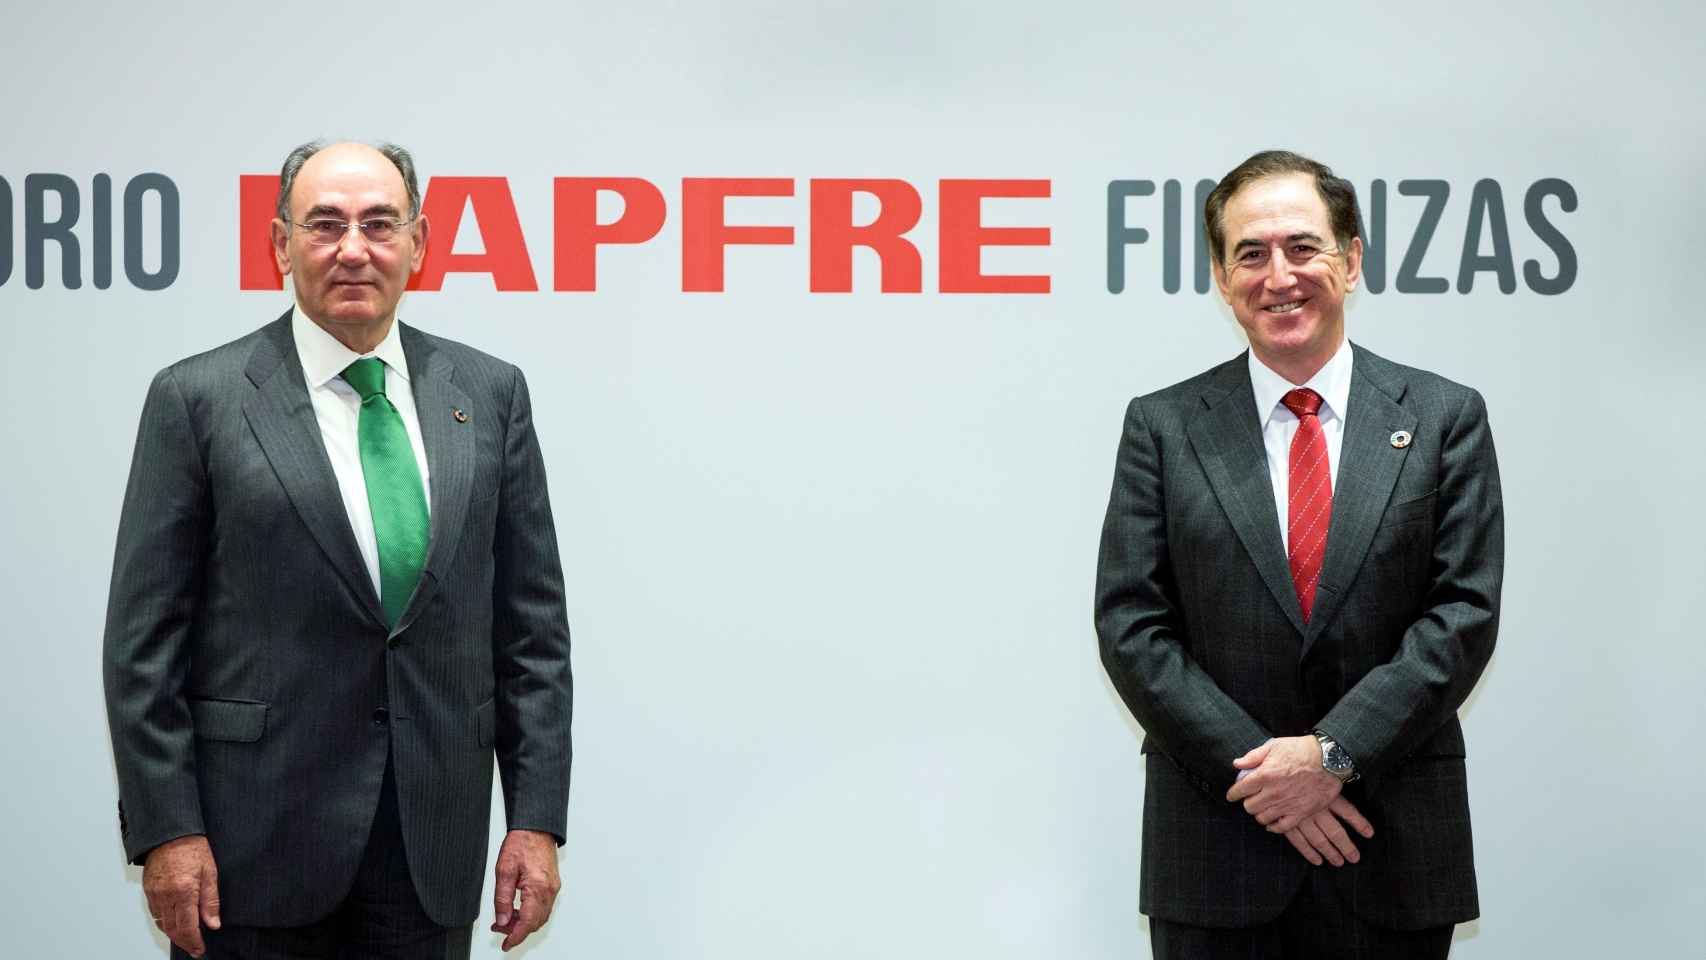 Ignacio Galán, presidente Iberdrola, y Antonio Huertas, presidente Mapfre.